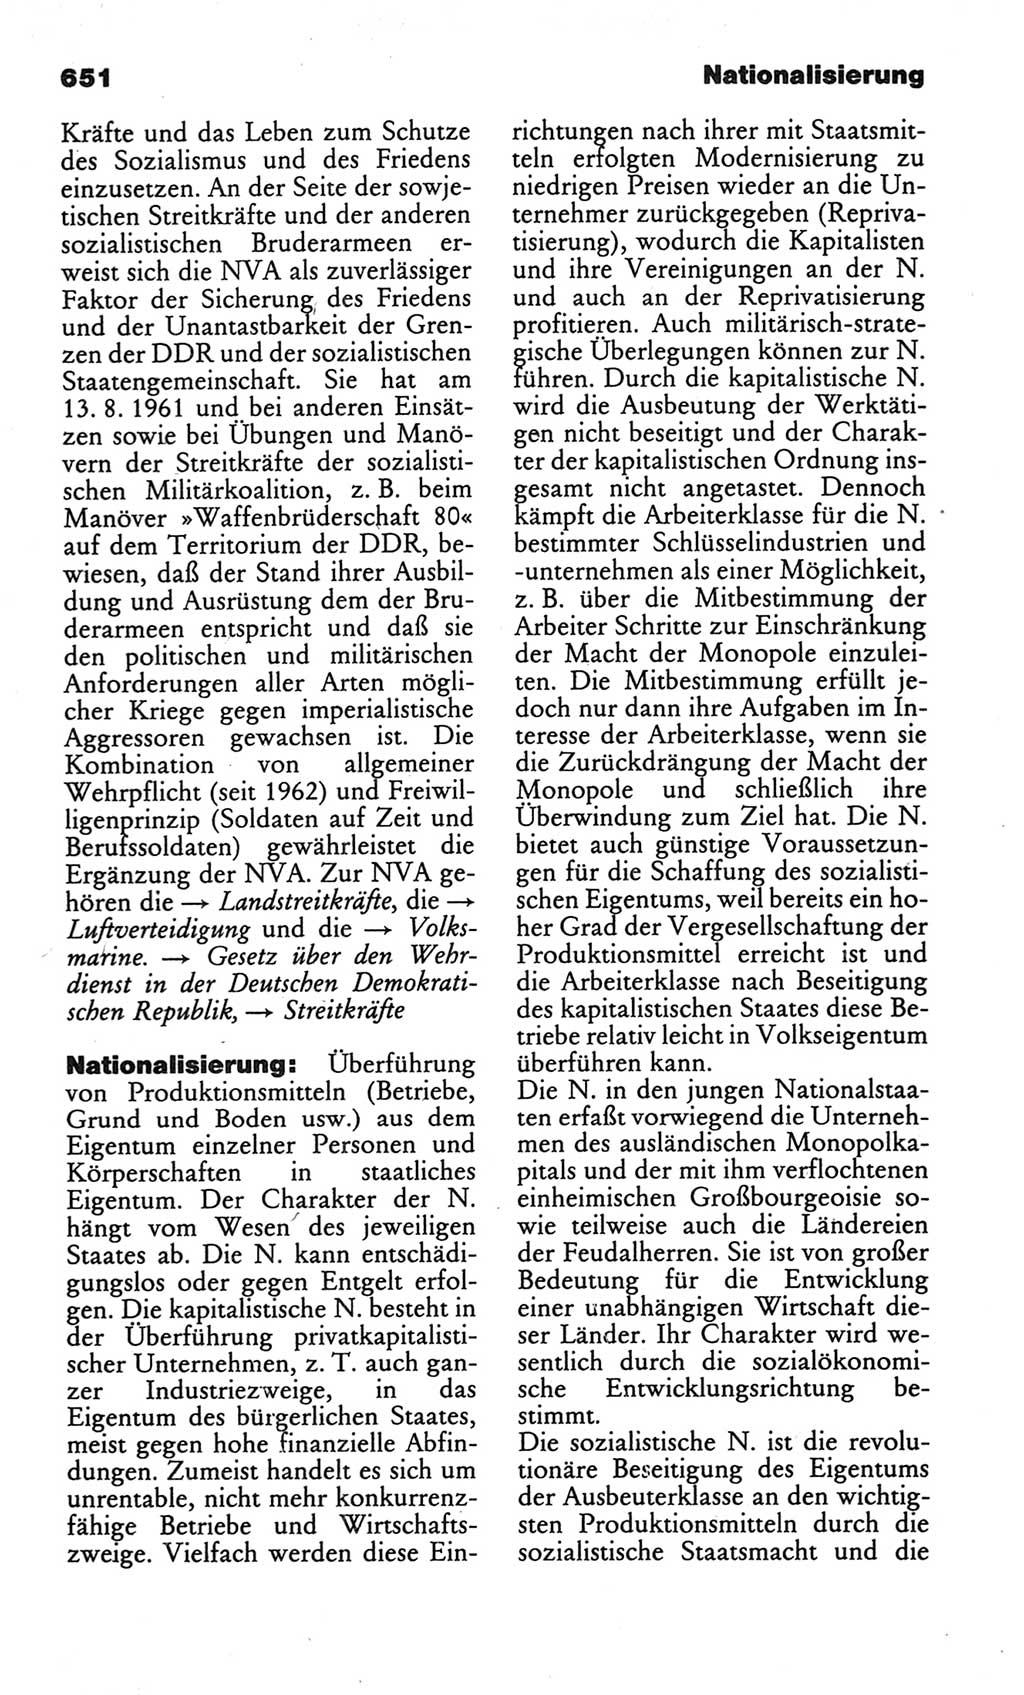 Kleines politisches Wörterbuch [Deutsche Demokratische Republik (DDR)] 1986, Seite 651 (Kl. pol. Wb. DDR 1986, S. 651)